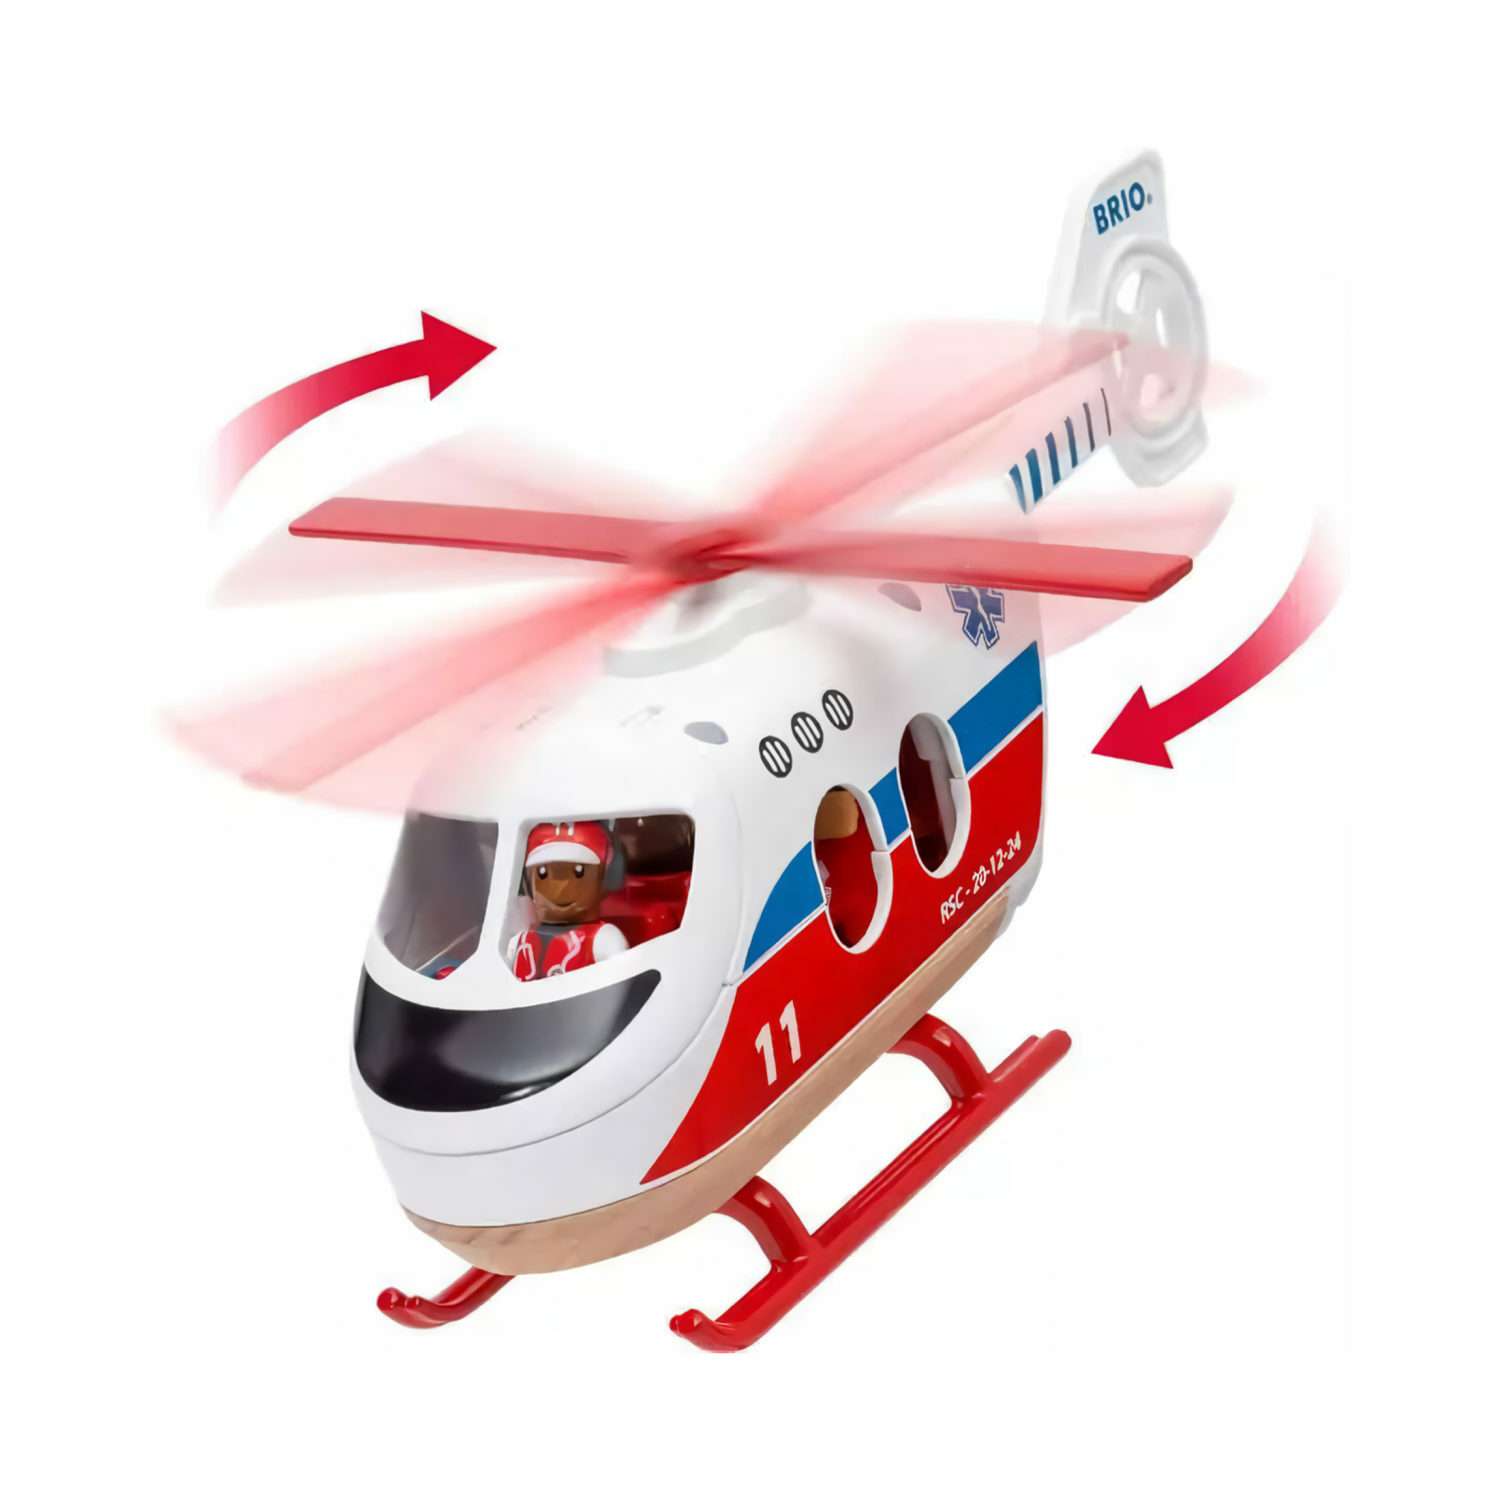 Игровой набор BRIO Cпасательный вертолет 4 элемента 36022 - фото 2